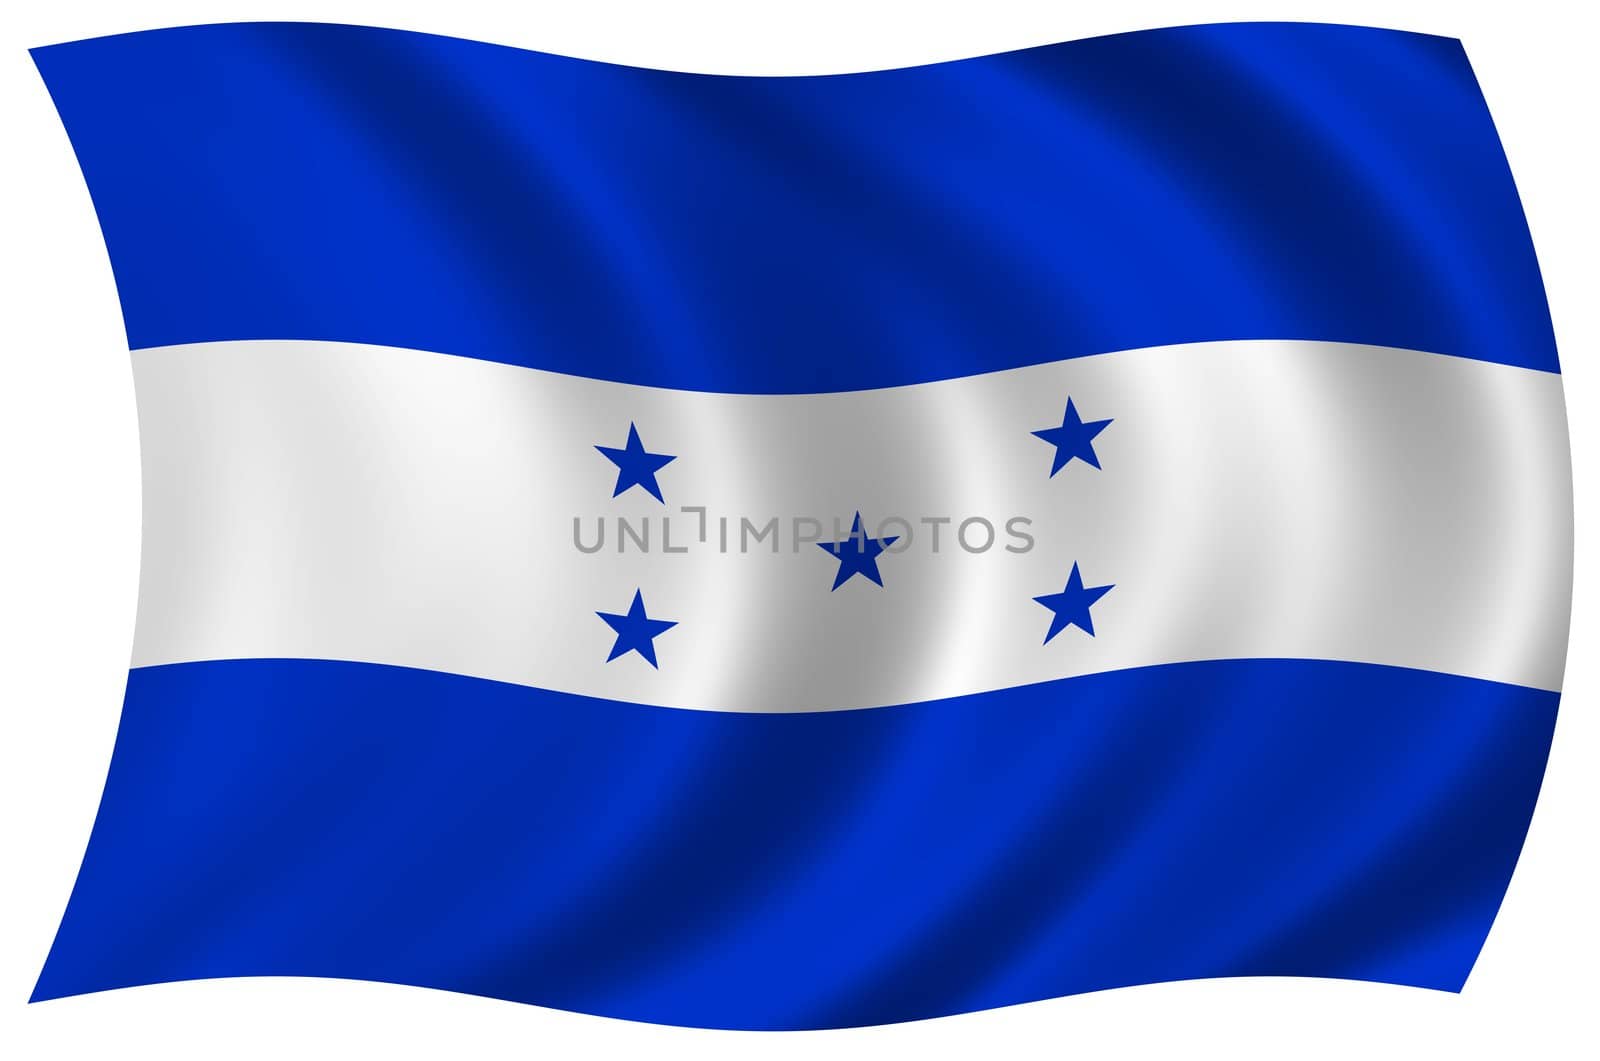 Flag of Honduras by peromarketing